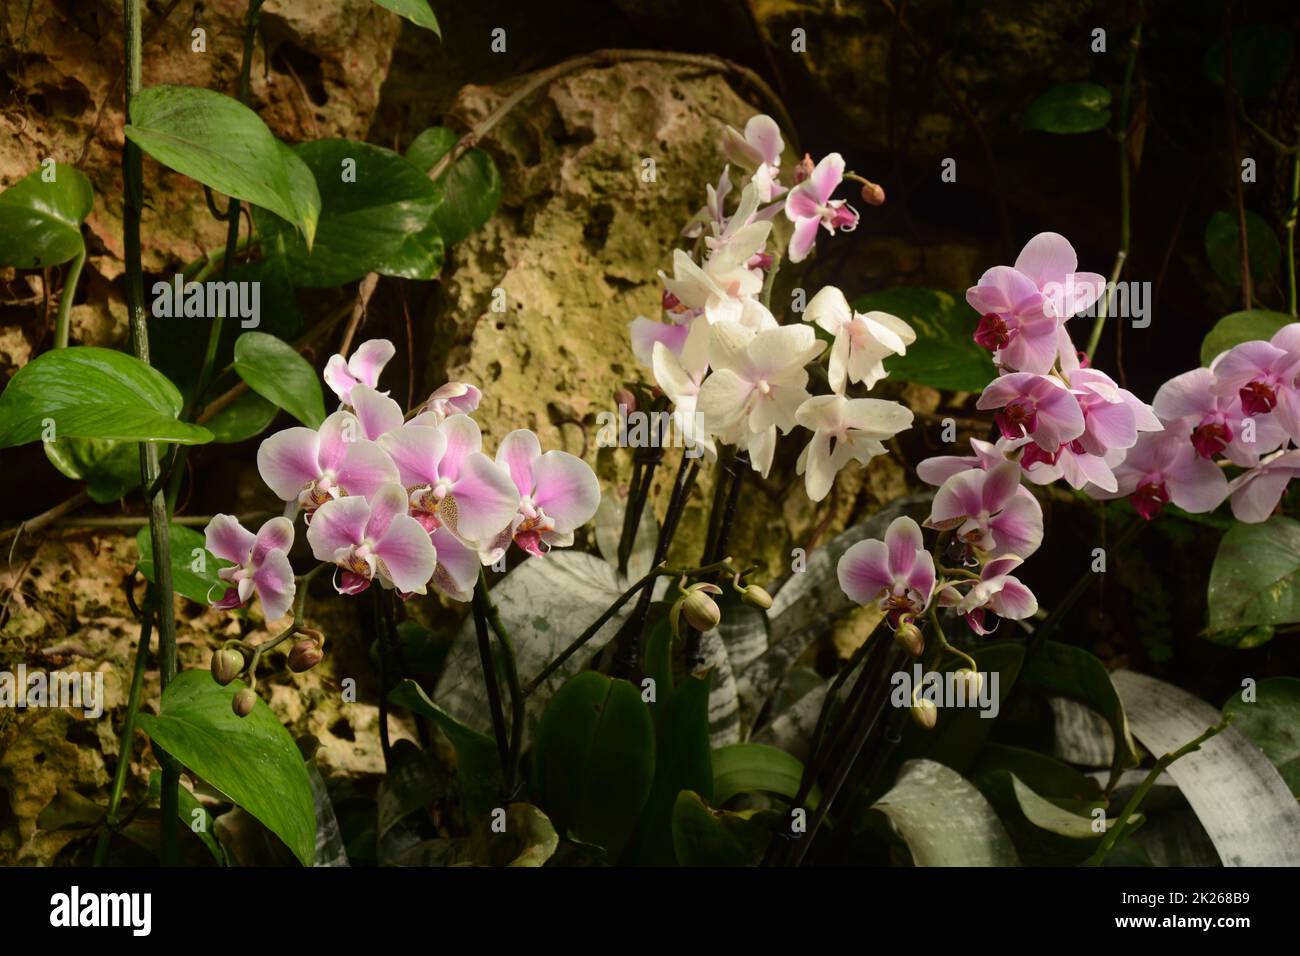 Orchidee uno dei più grandi e diversi gruppi di piante da fiore. Parco di piante tropicali UTOPIA. Israele. Foto Stock